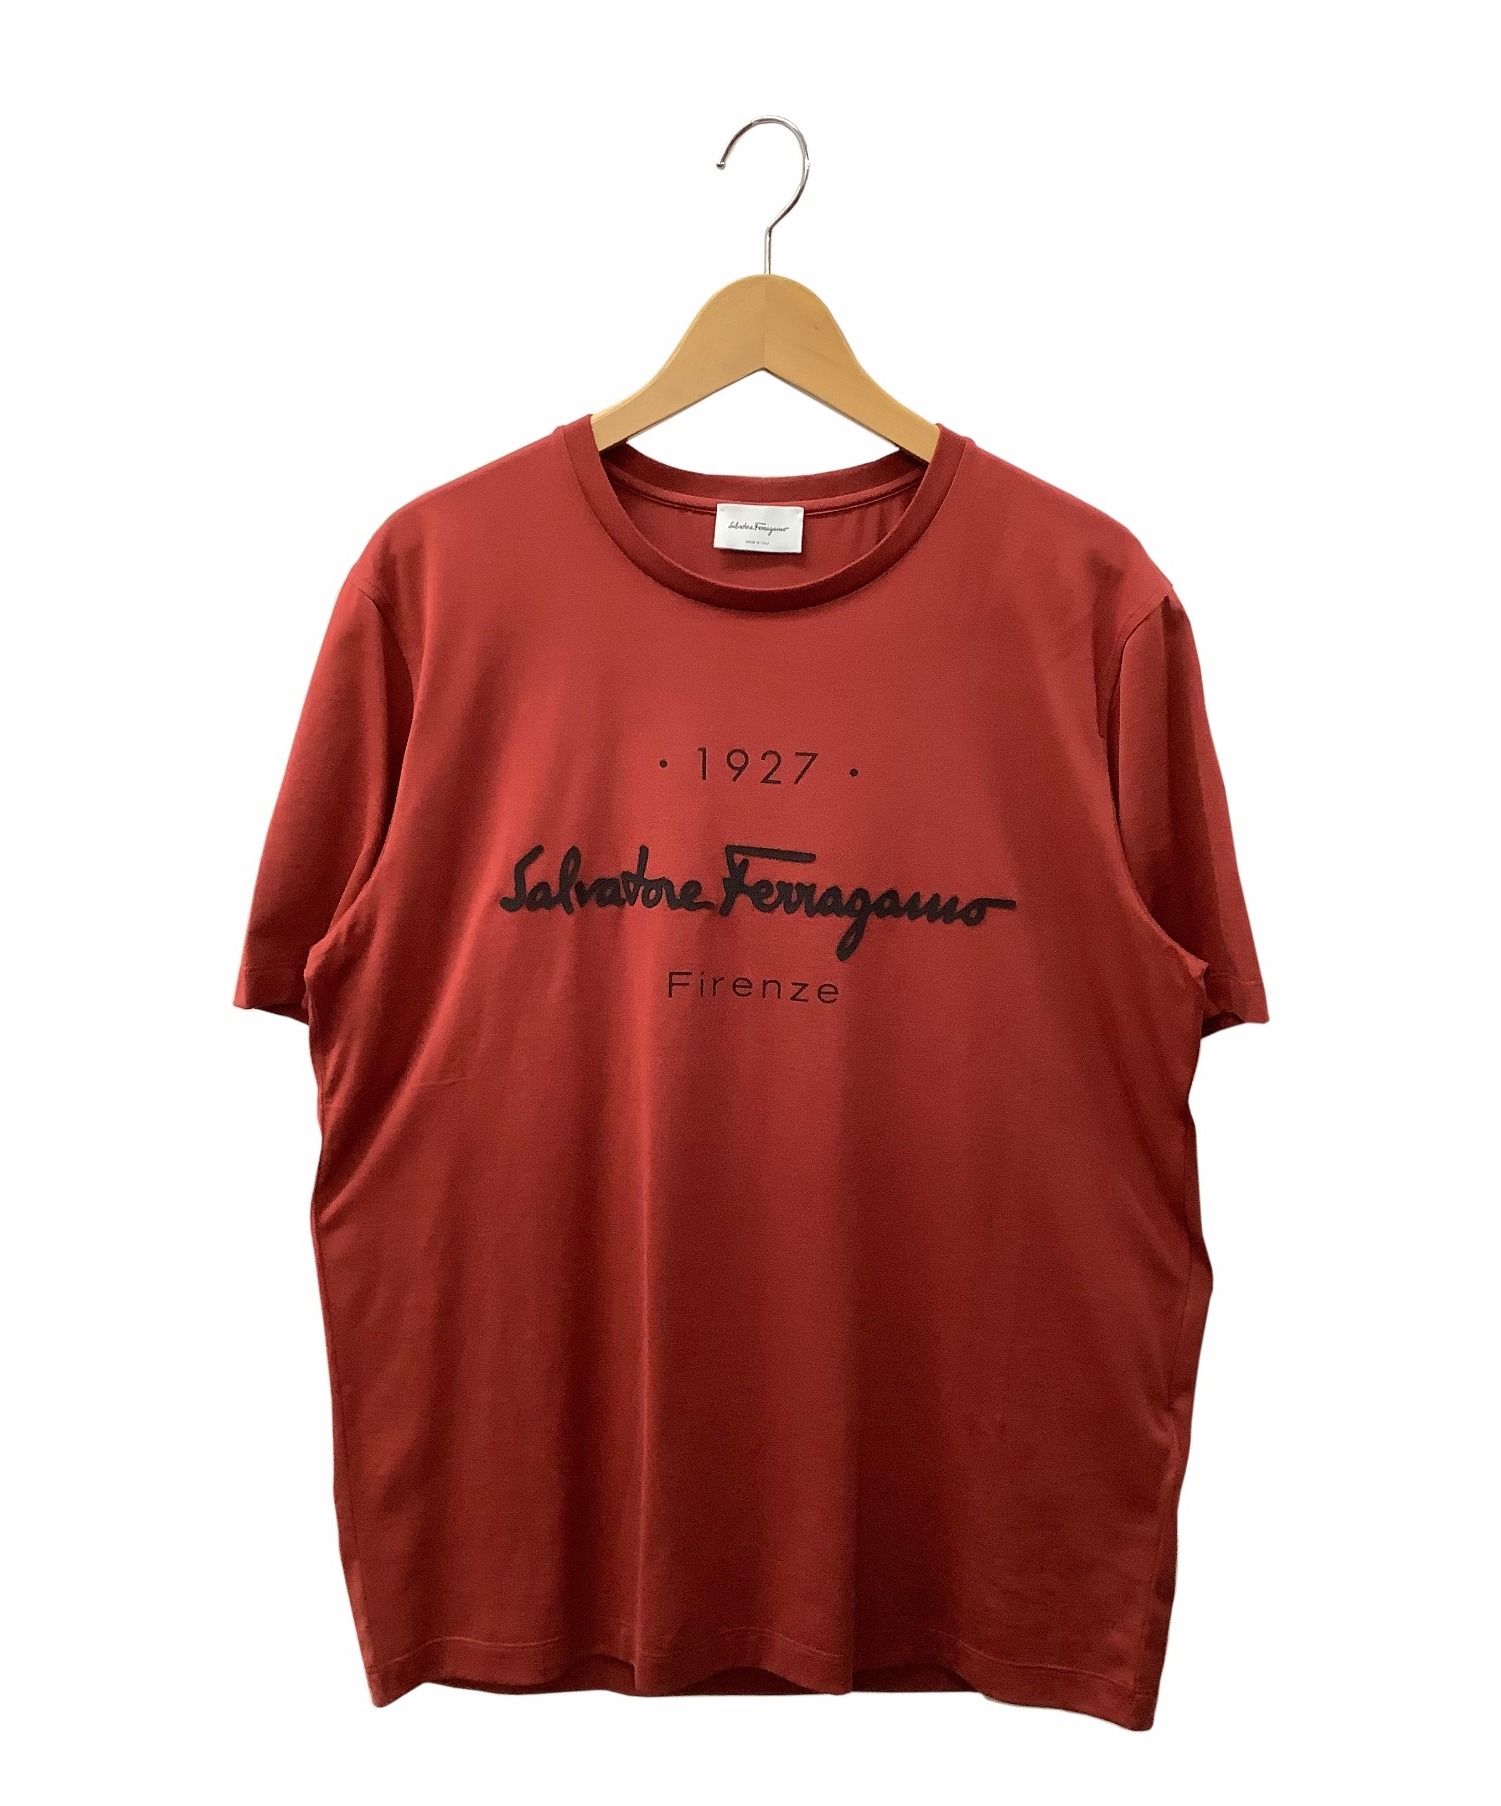 Salvatore Ferragamo (サルヴァトーレ フェラガモ) ロゴTシャツ レッド サイズ:M